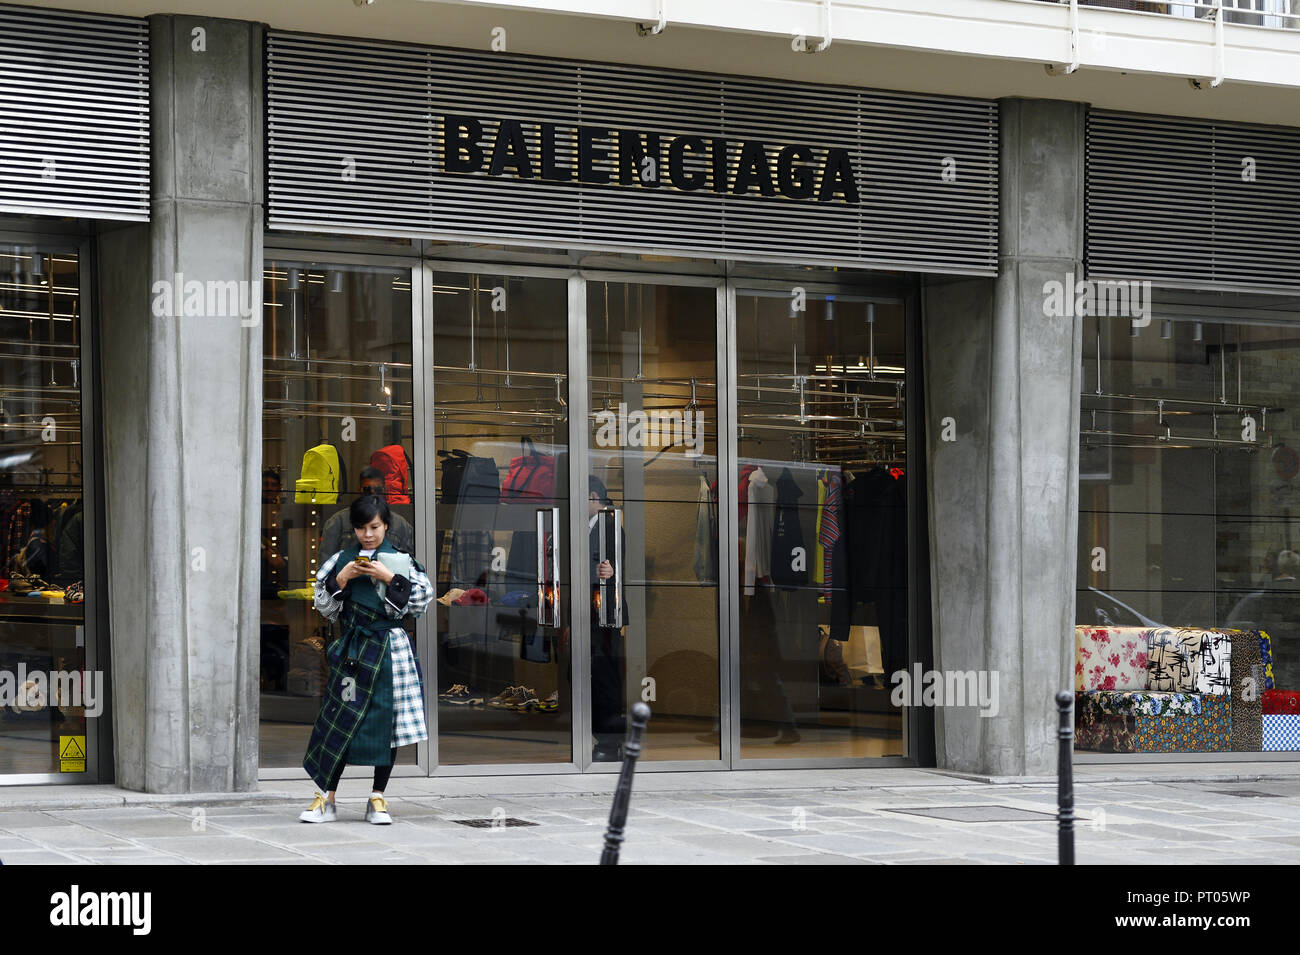 Magasin balenciaga Banque de photographies et d'images à haute résolution -  Alamy